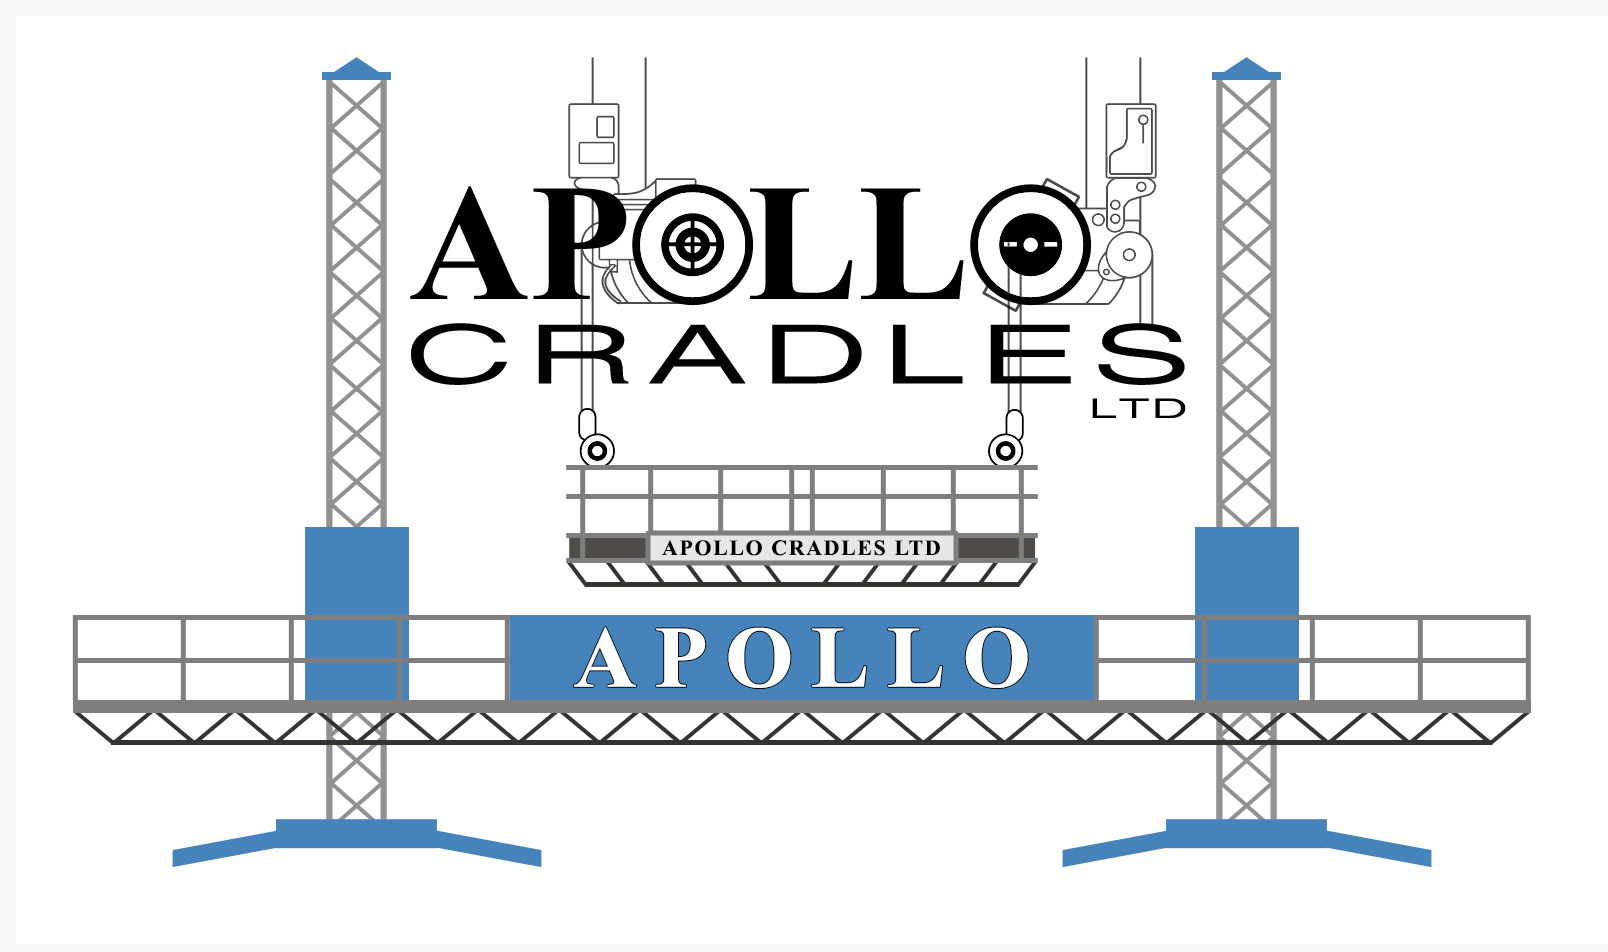 Apollo Cradles Ltd